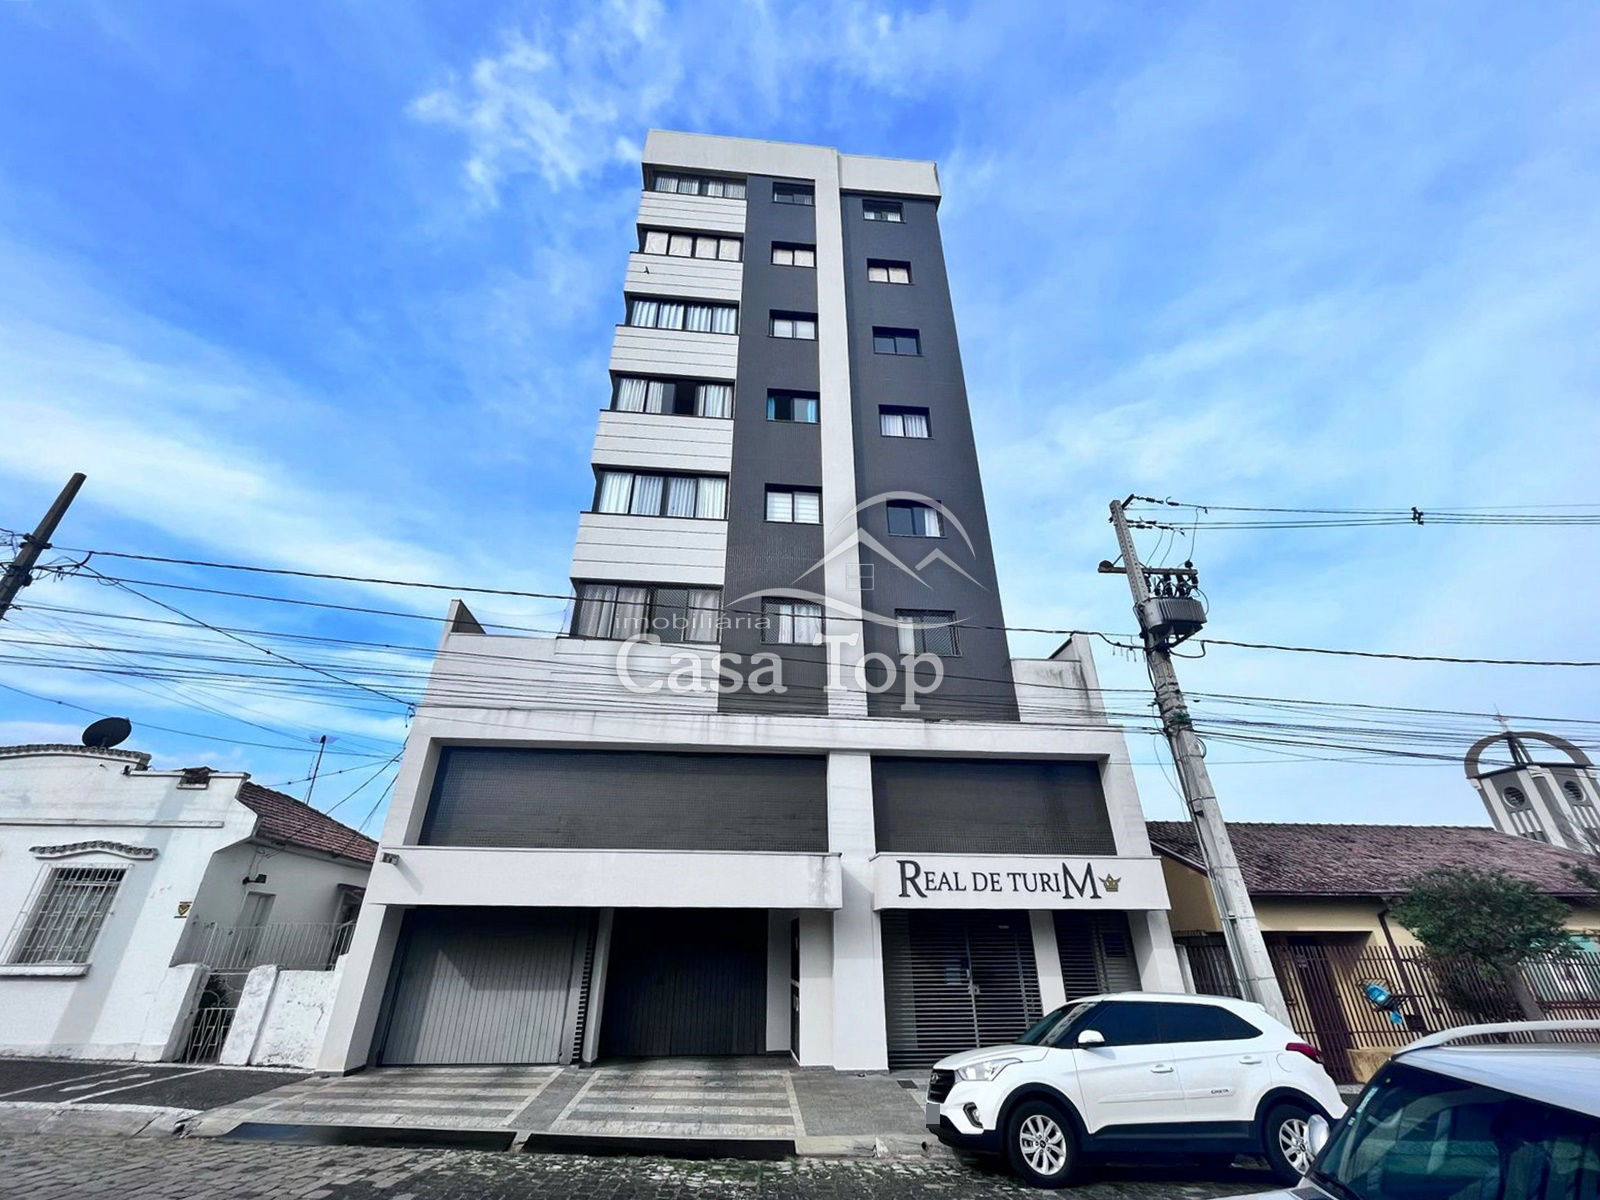 Apartamento semimobiliado à venda Edifício Real de Turim - Vila Estrela